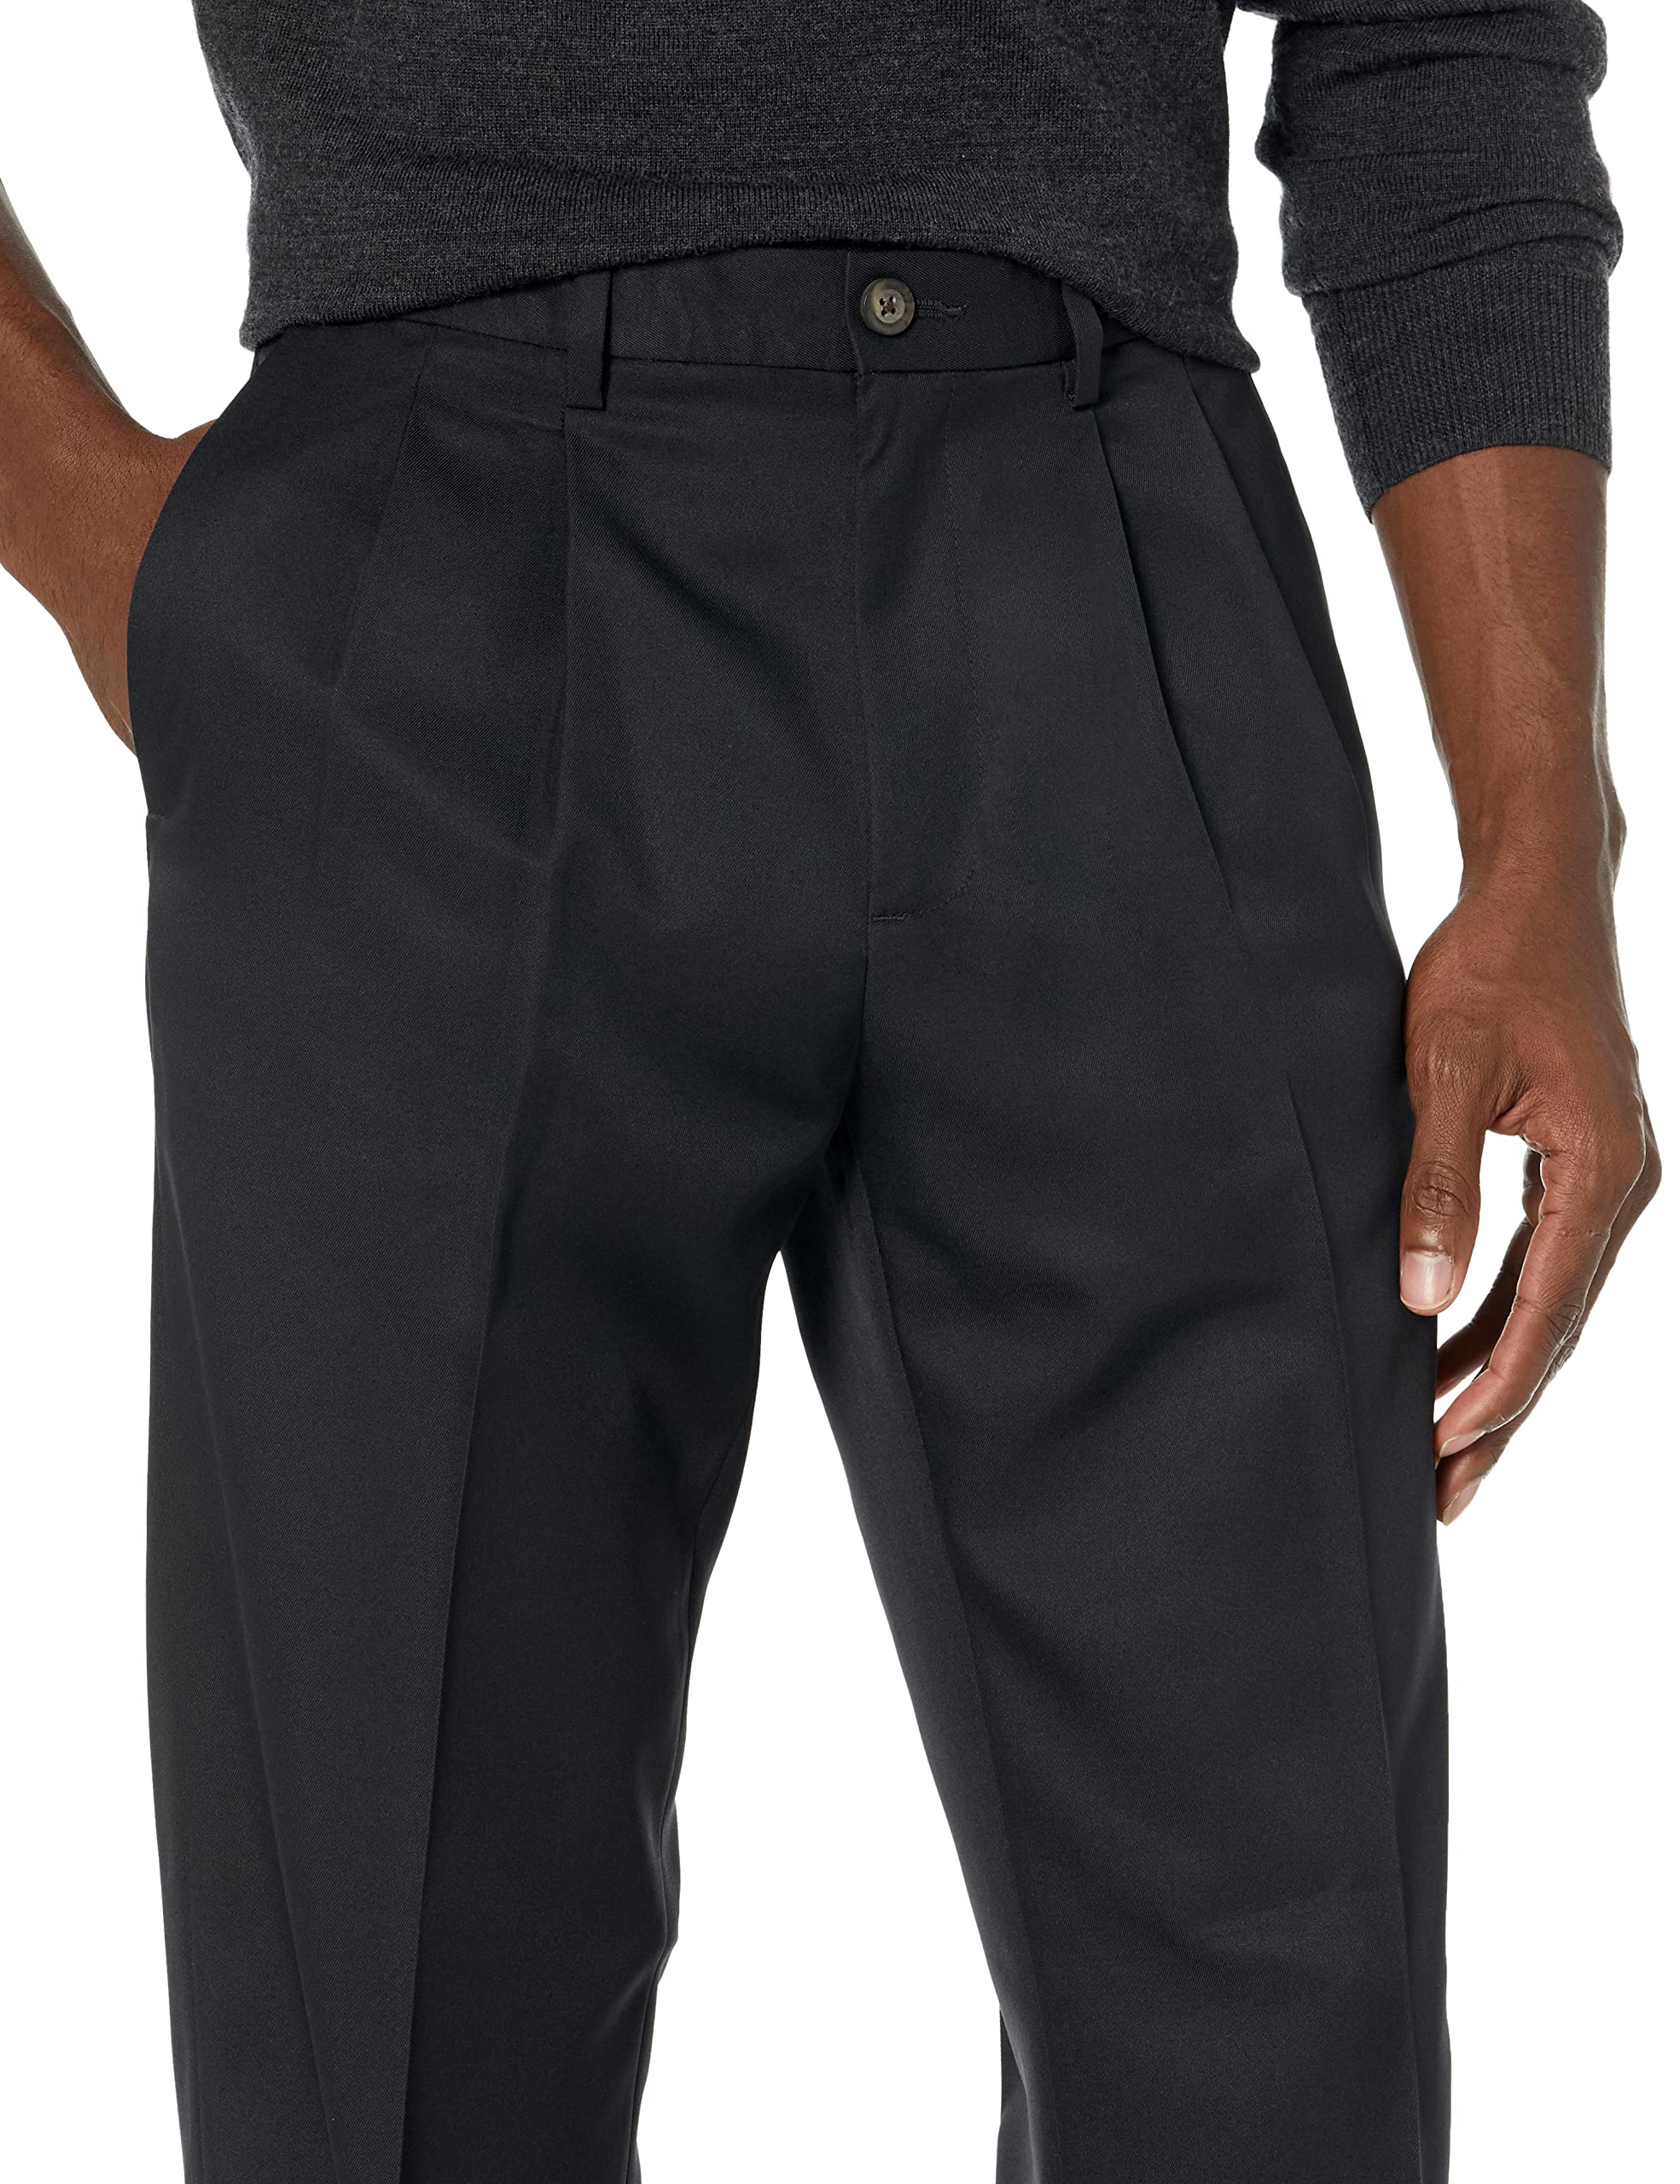 Amazon Essentials Men's Classic-Fit Expandable-Waist Pleated Dress Pant